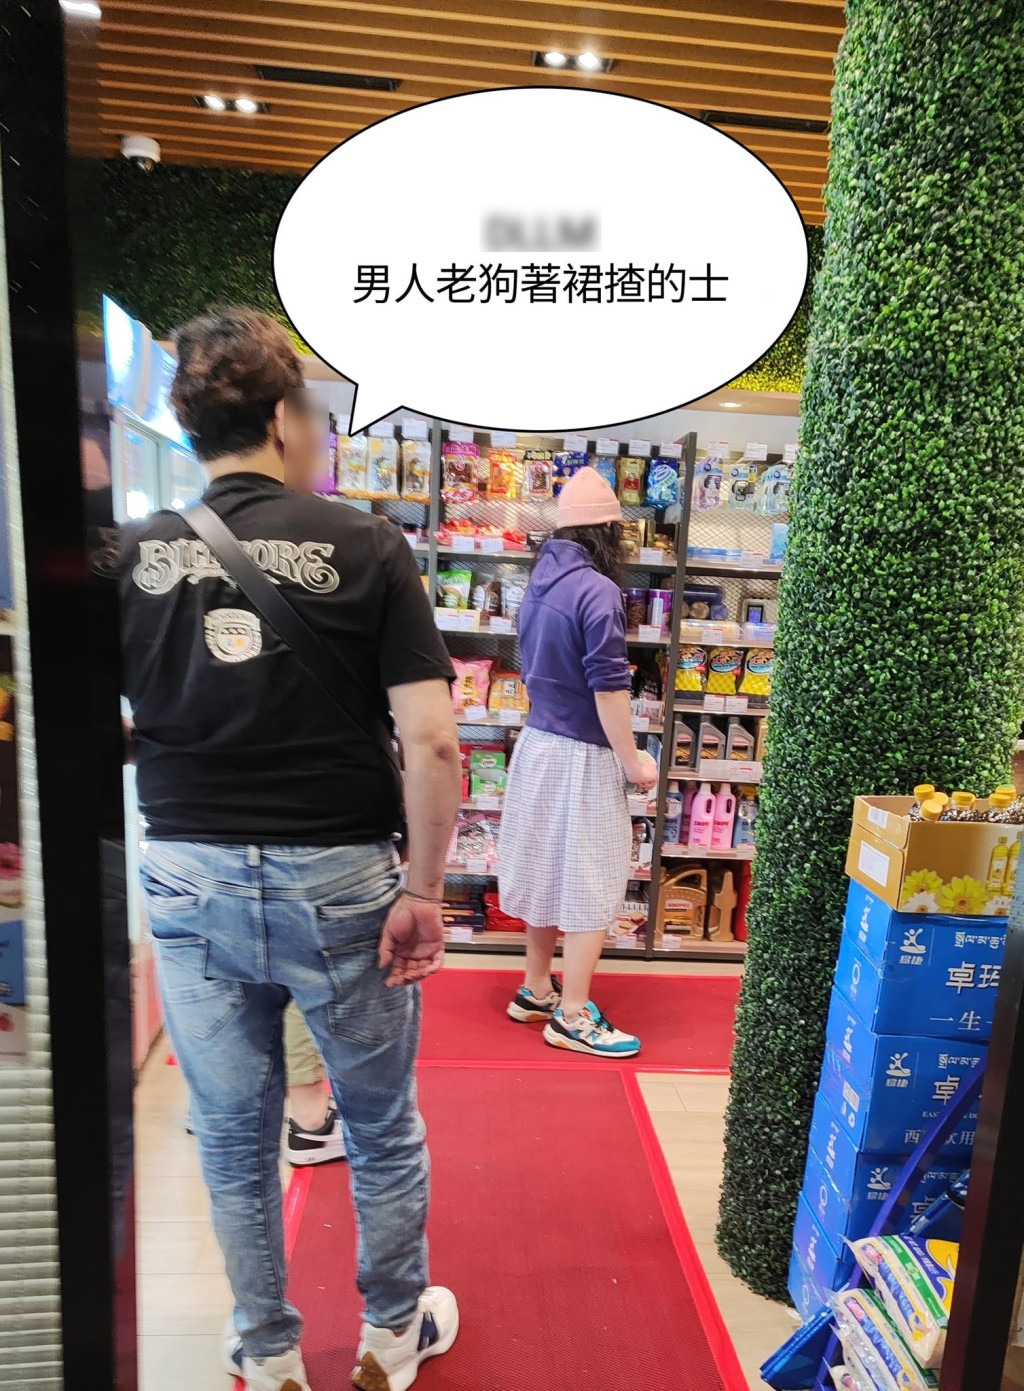 有网民近日拍到一张「易服的哥」著裙揸的士的相片，该「易服的哥」当时正身处加油站内便利店。